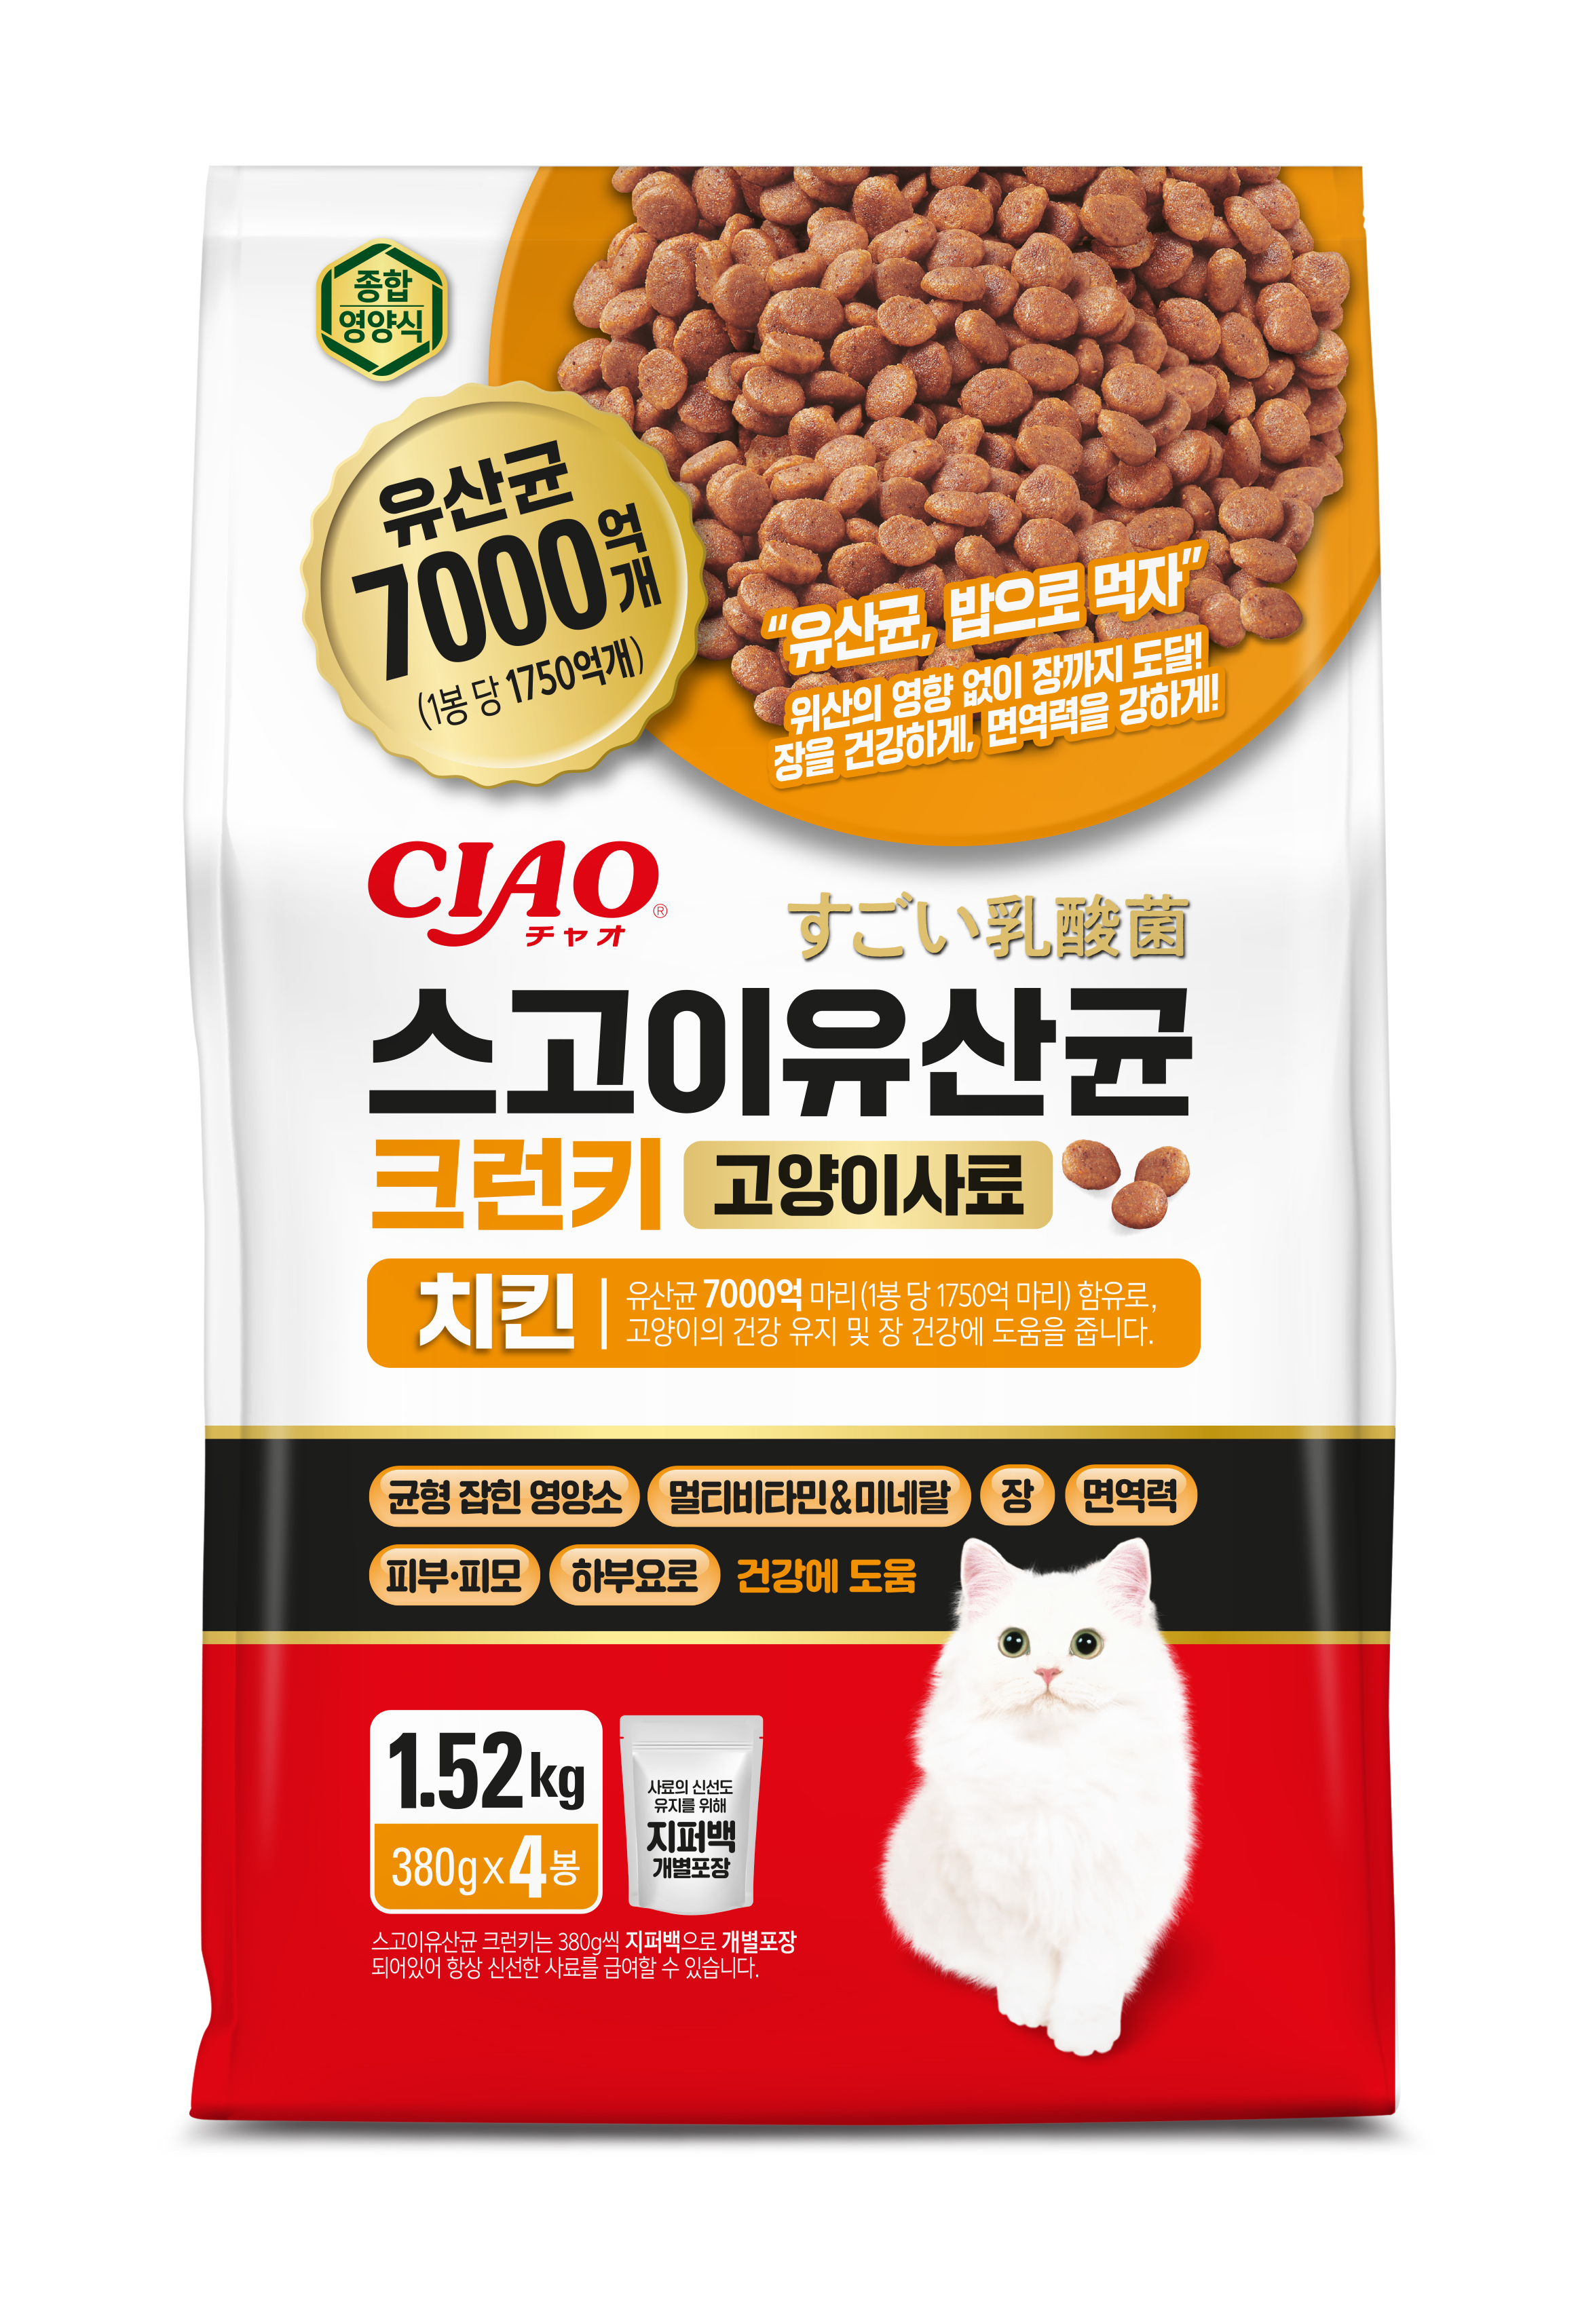 [고양이사료] 스고이 유산균 크런키 1.52kg (380G*4봉) - 치킨